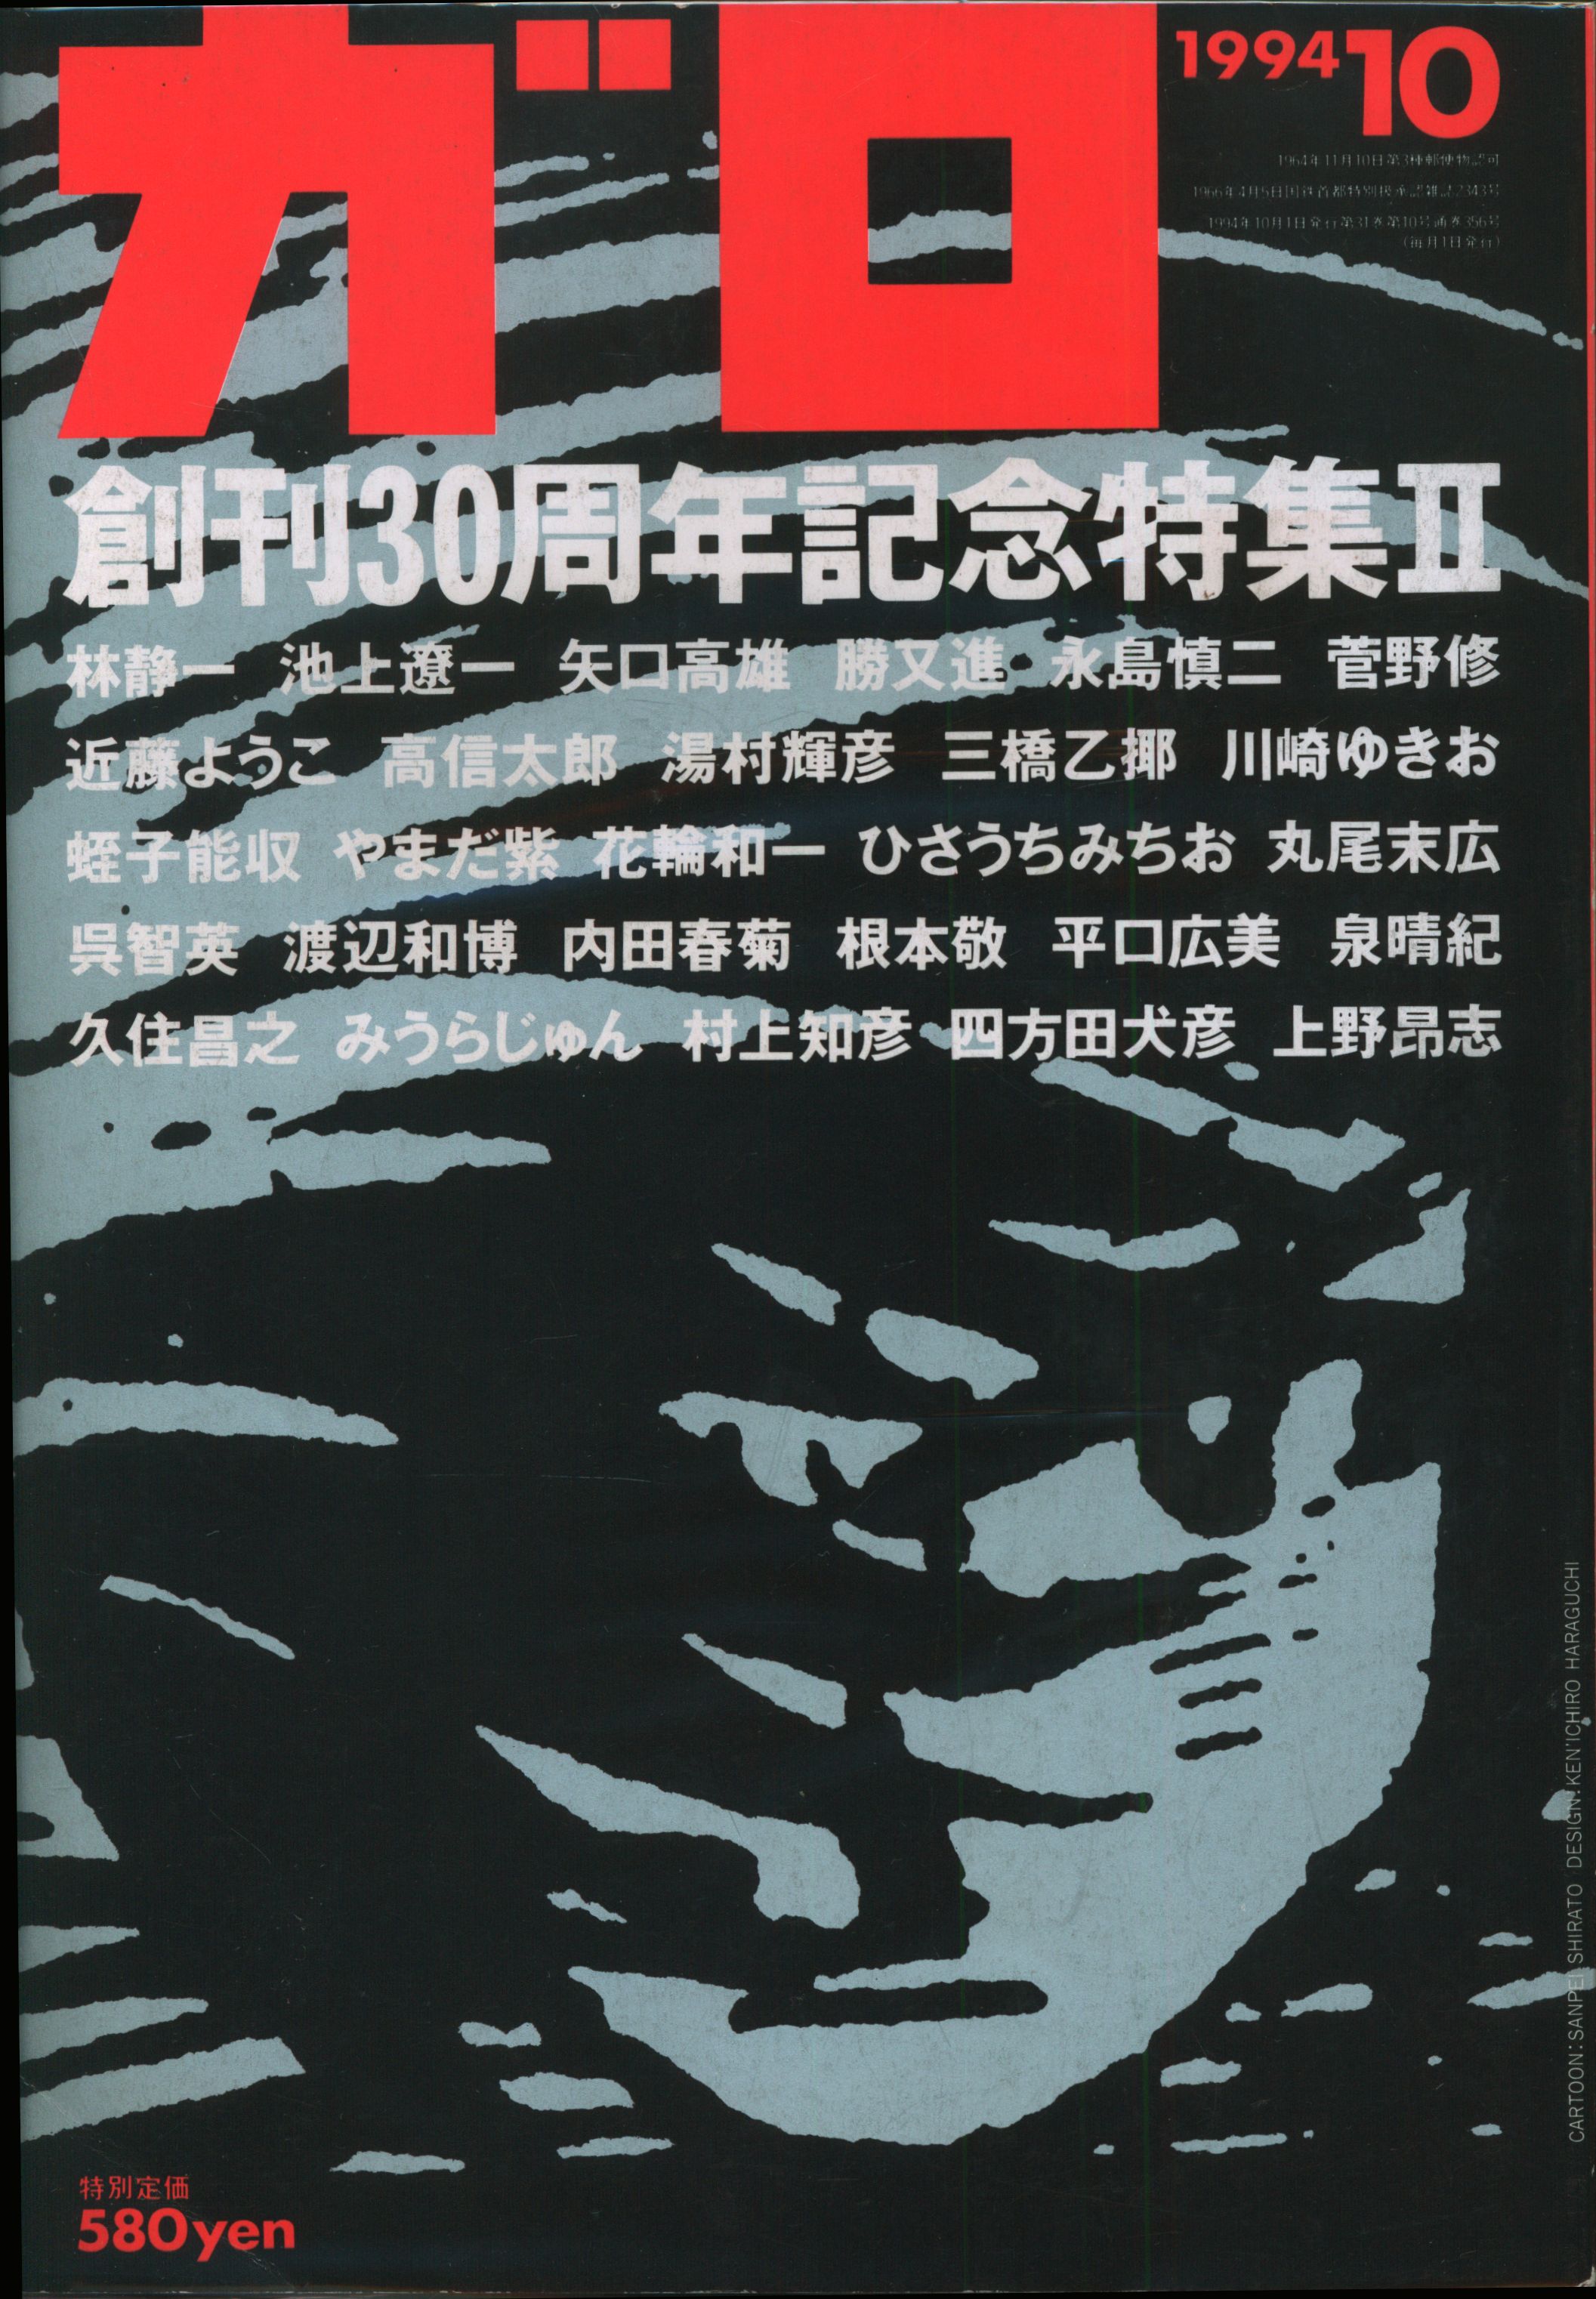 青林堂 1994年 平成6年 の漫画雑誌 月刊ガロ1994年 平成6年 10月号 9410 まんだらけ Mandarake